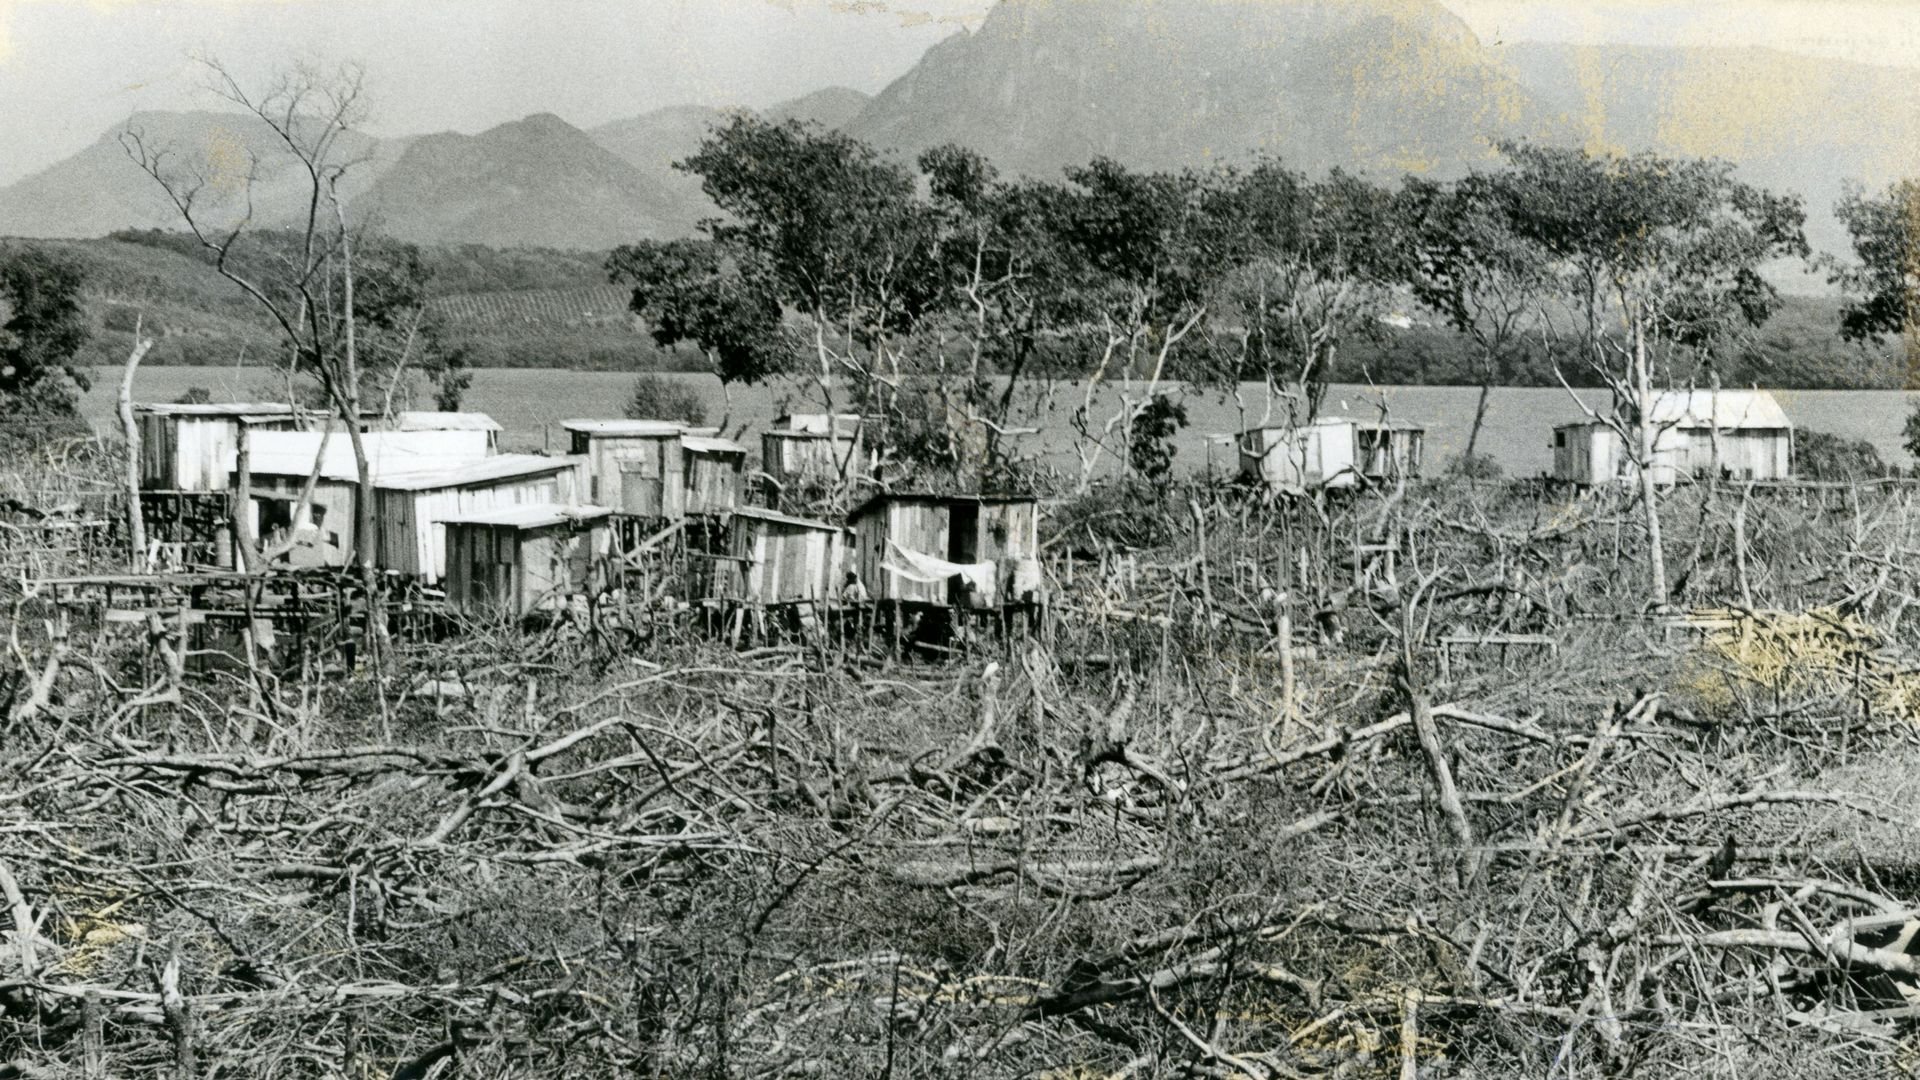 Desmatamento do mangue no bairro São Pedro. Imagem de 1989